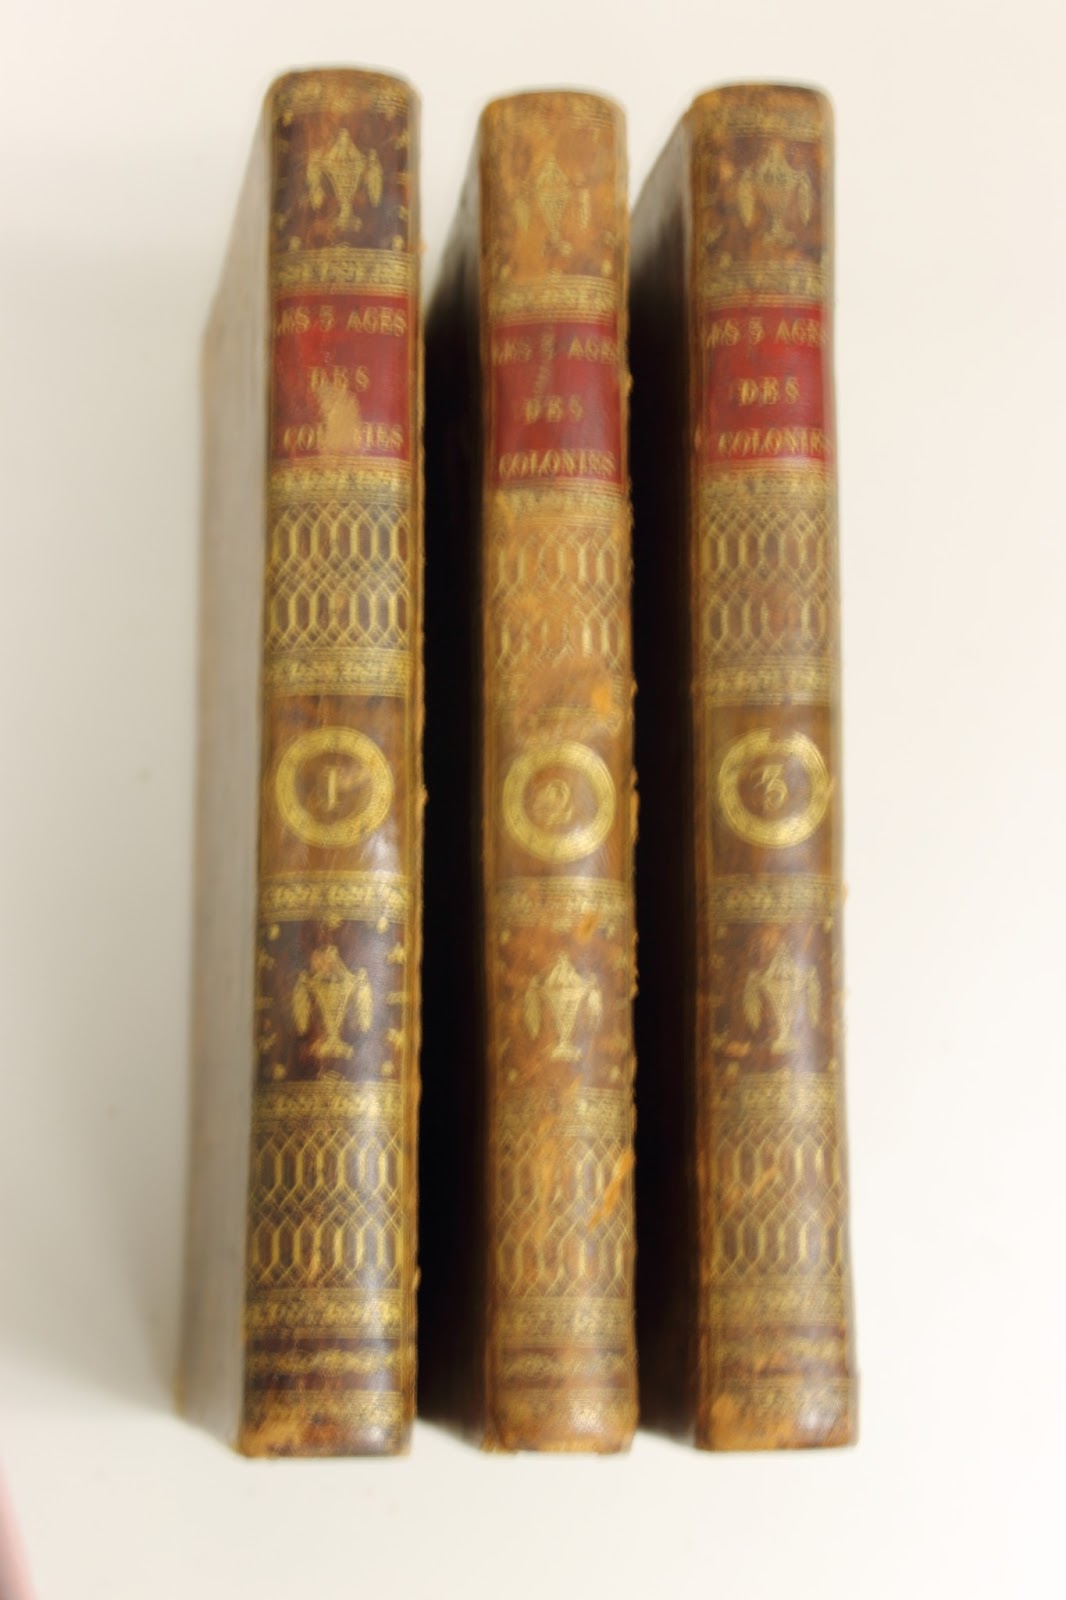 The spines of Dufour de Pradt’s three-volume 1801 work Les trois ages des colonies, ou de leur état passé, présent, et à venir